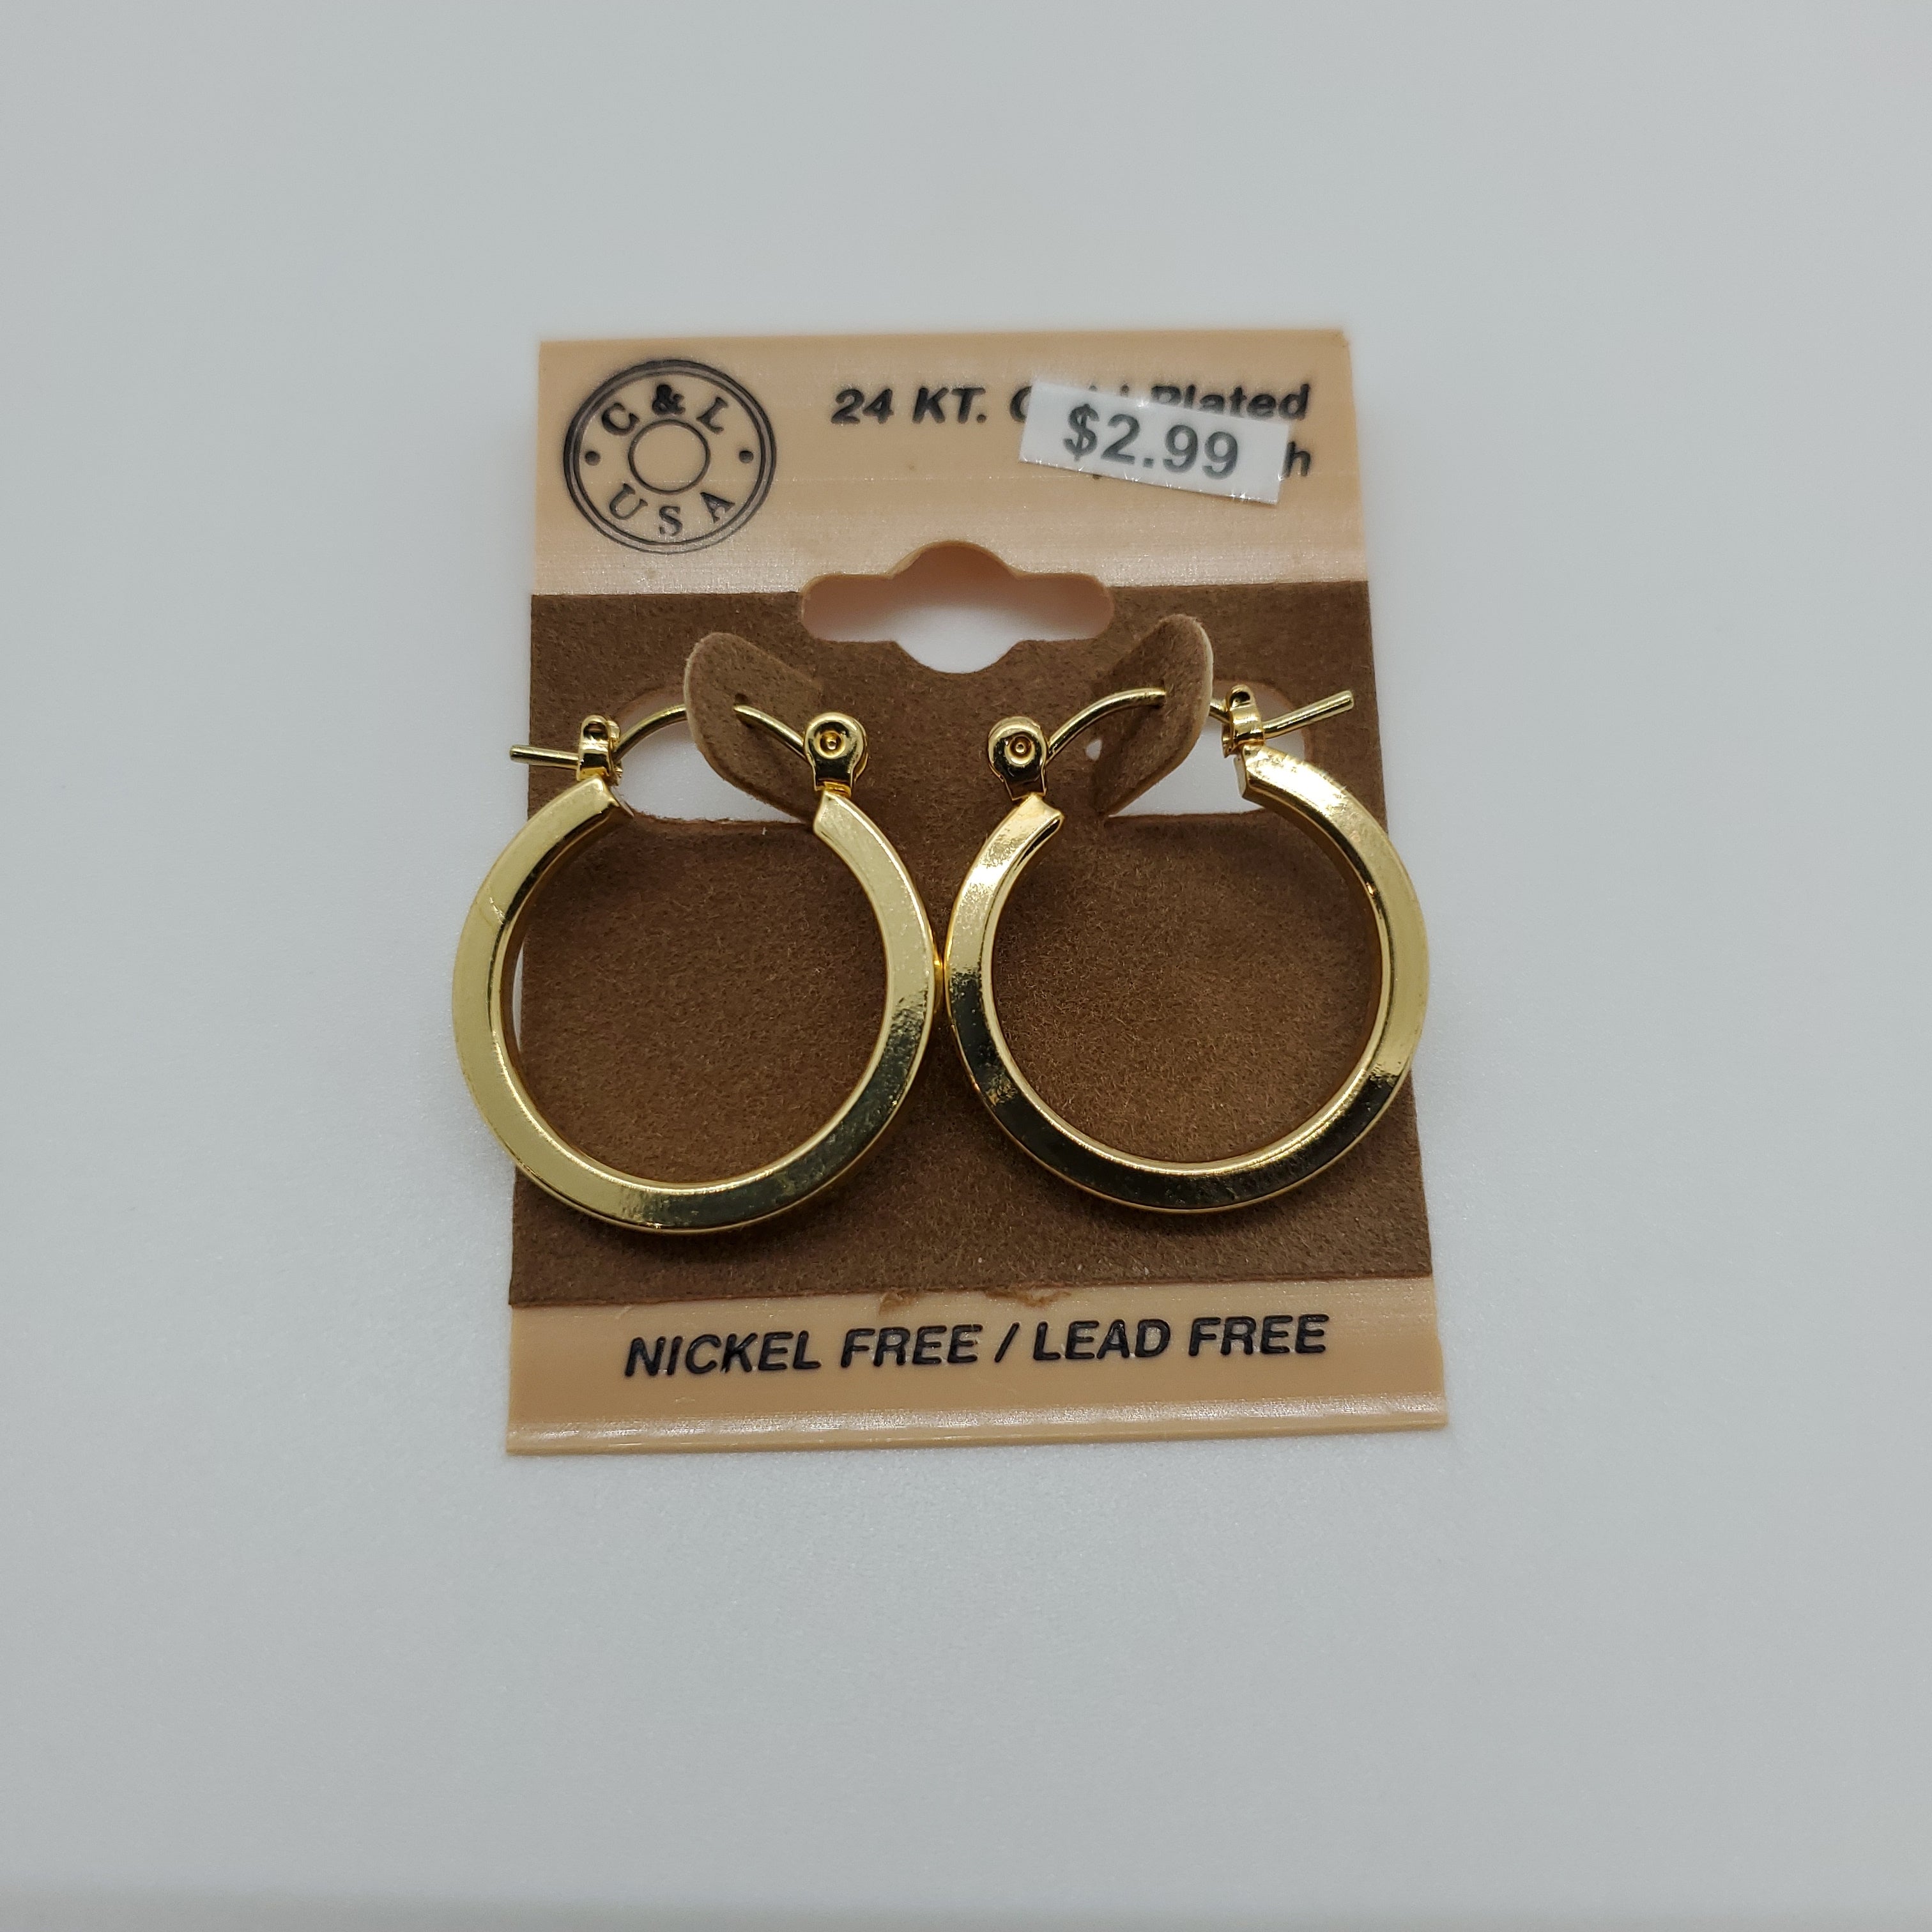 24KT Gold Plated Pincatch Hoop Earrings NPK107 - Beauty Bar & Supply